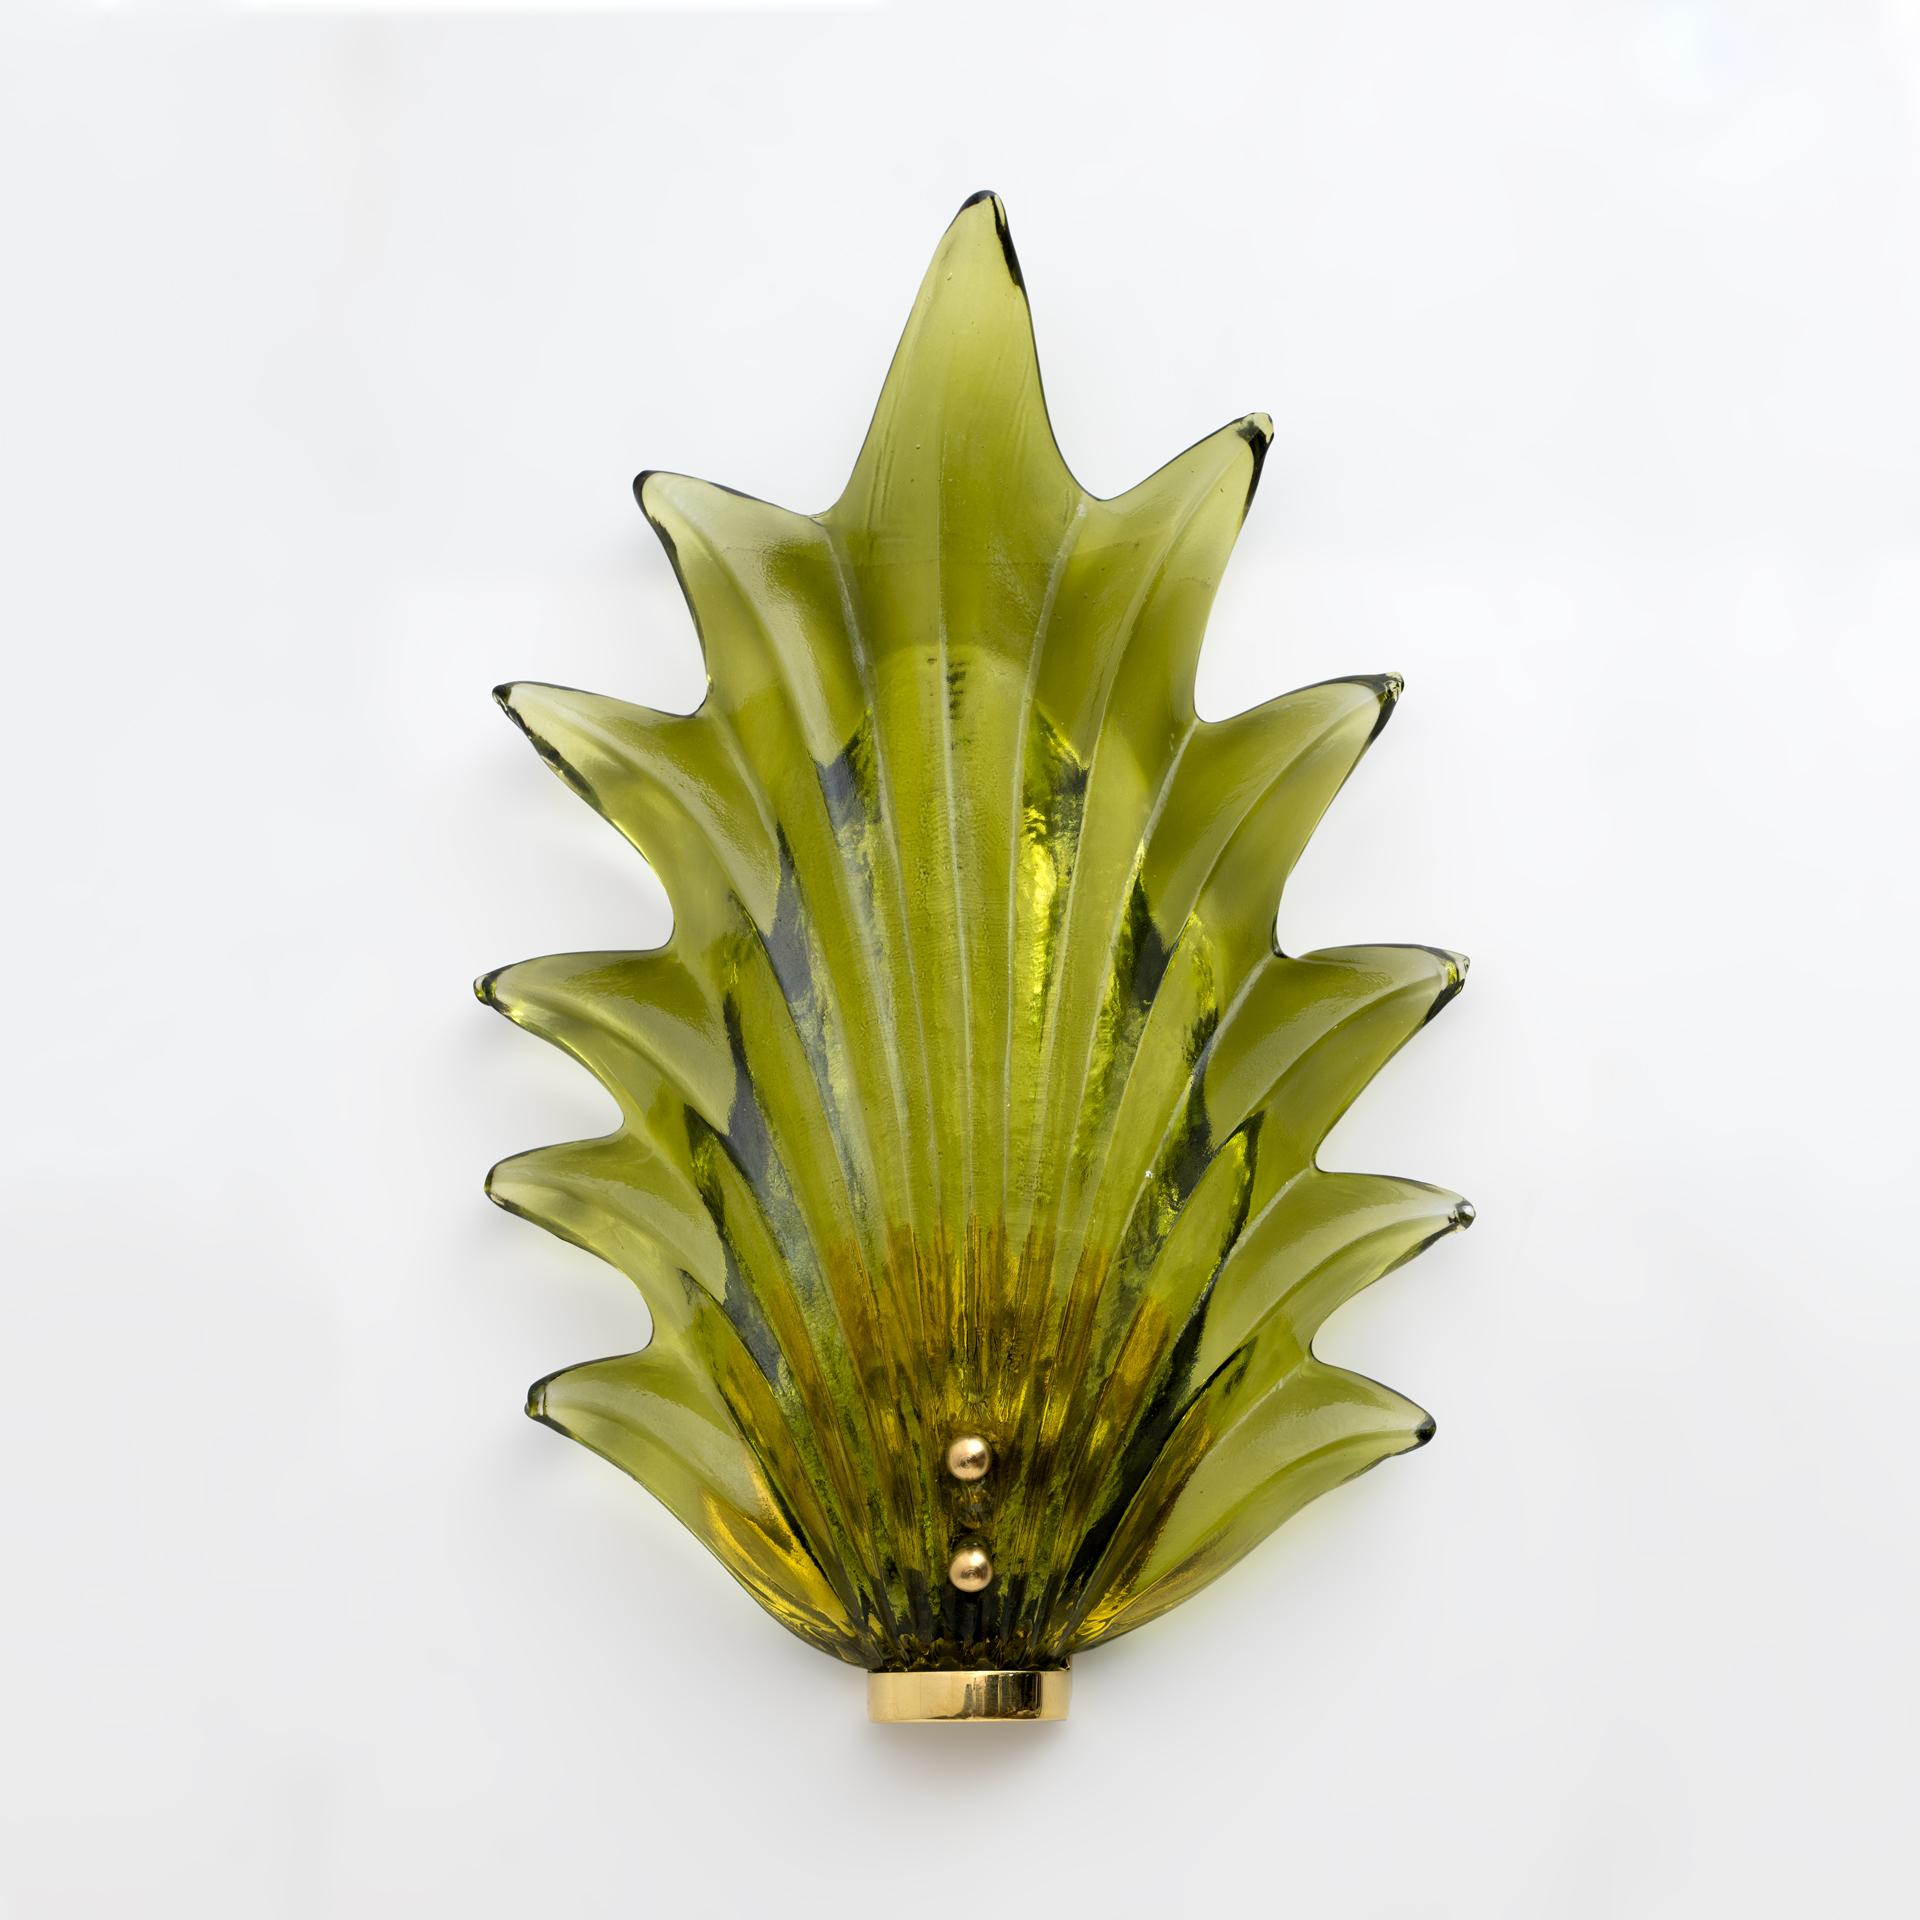 Magnifiques feuilles en verre de Murano d'une merveilleuse couleur verte, rendues encore plus belles par la base en laiton poli. Les appliques sont constituées d'une structure en laiton qui est fixée au mur à l'aide de chevilles et d'une grande